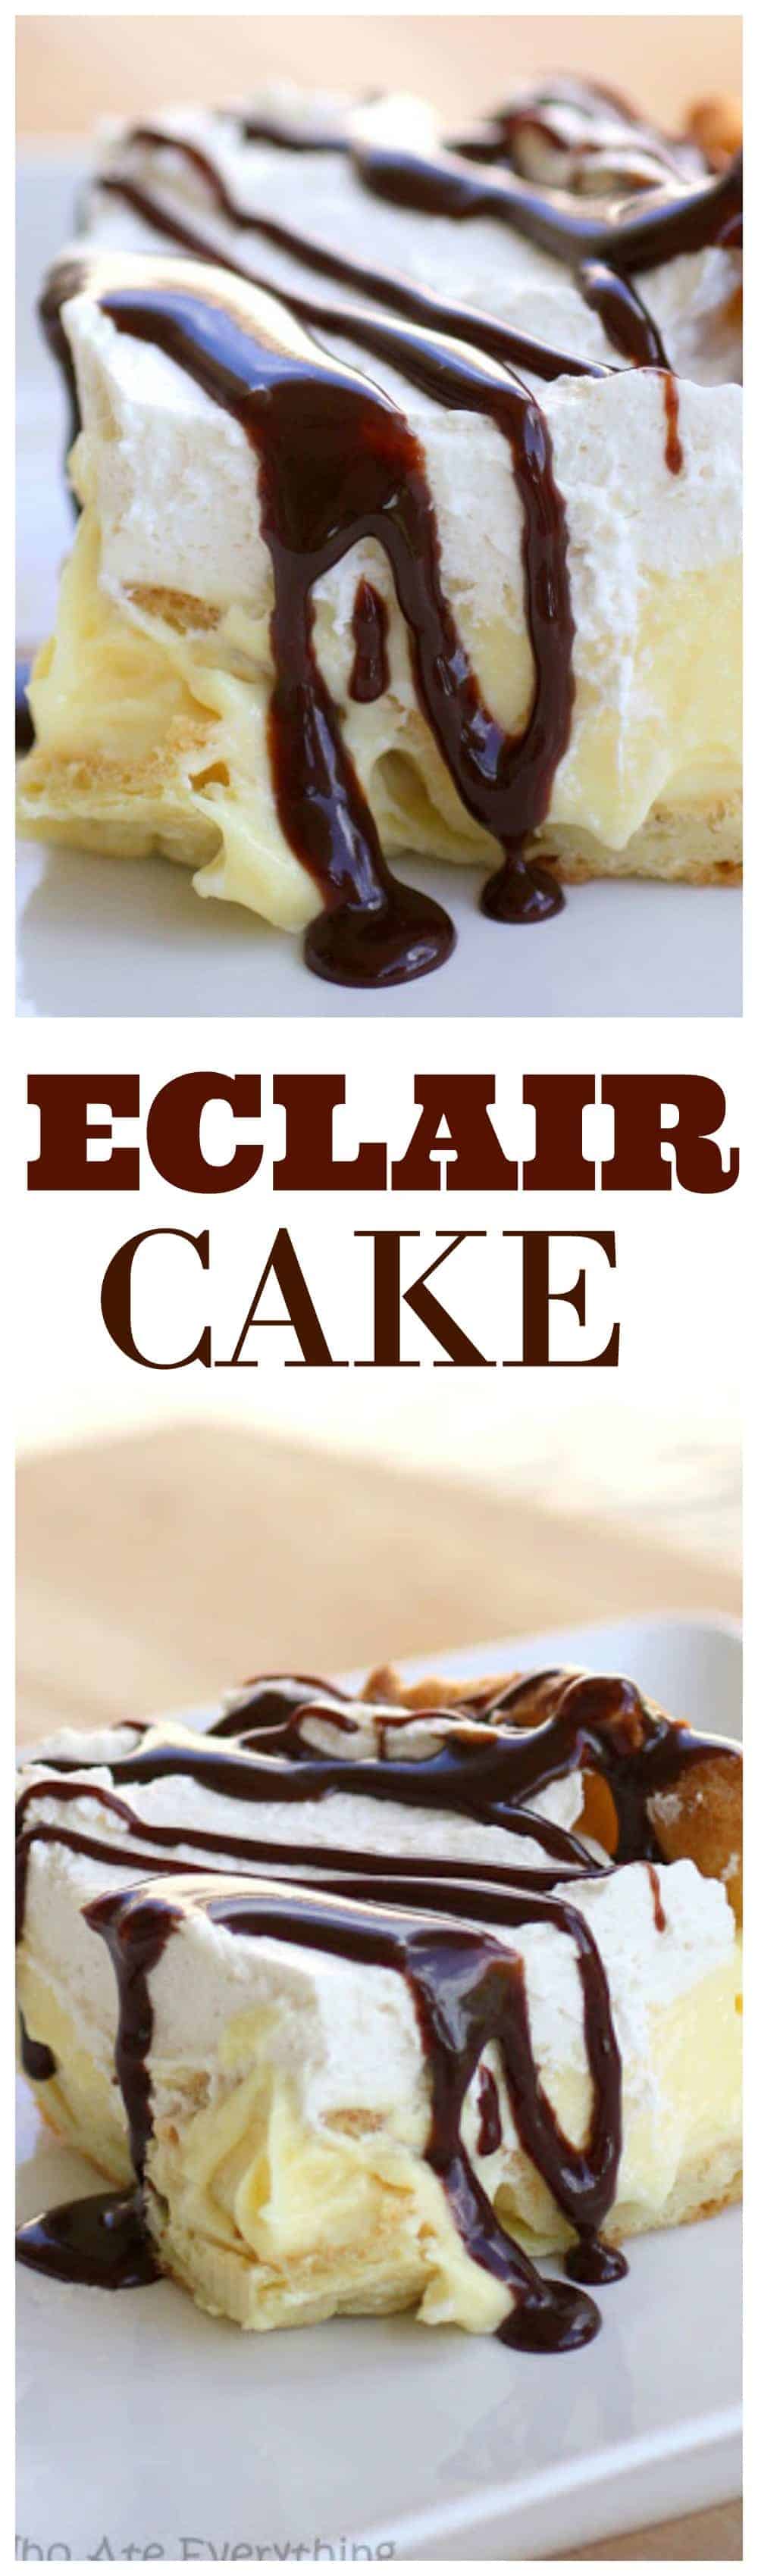 Este bolo Eclair tem uma crosta folhada de creme, camada de cream cheese de baunilha, chantilly e uma garoa de chocolate.  São todos os sabores de um eclair em forma de bolo.  #chocolate #eclair #bolo #receita #sobremesa